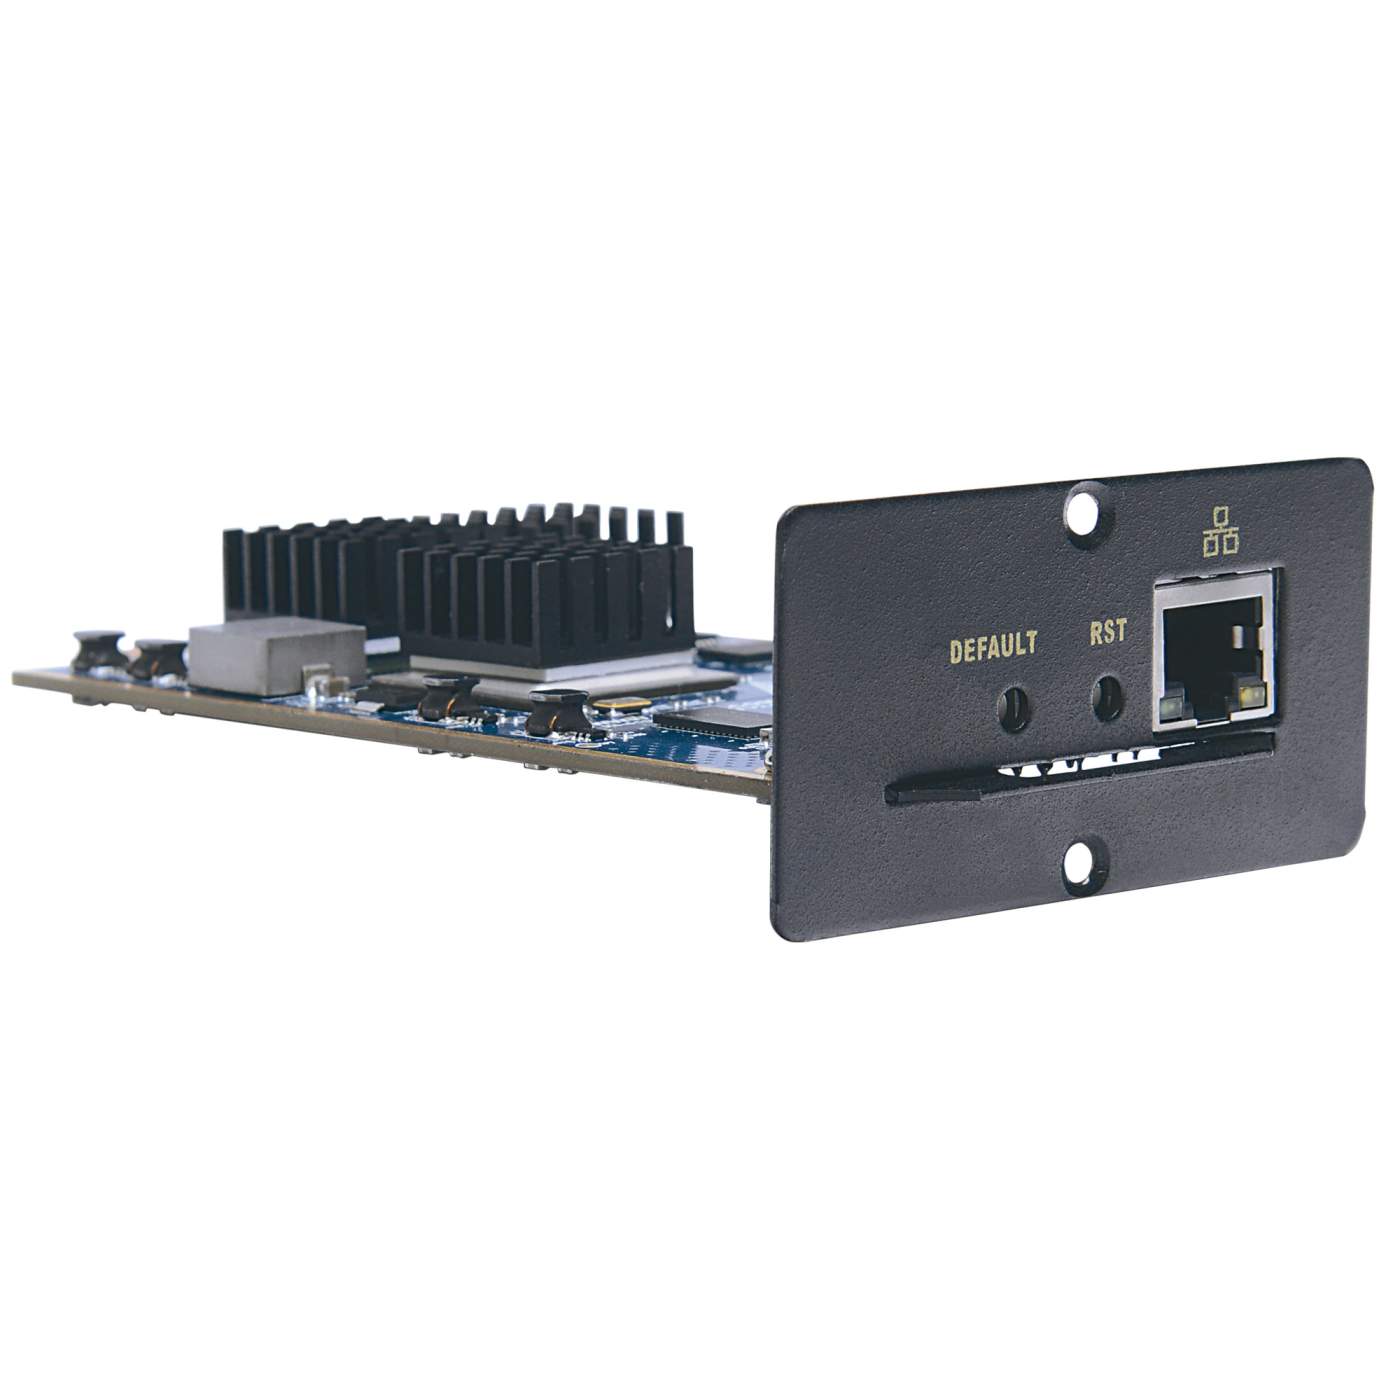 IP-Adapterkarte für KVM-Switche Image 3